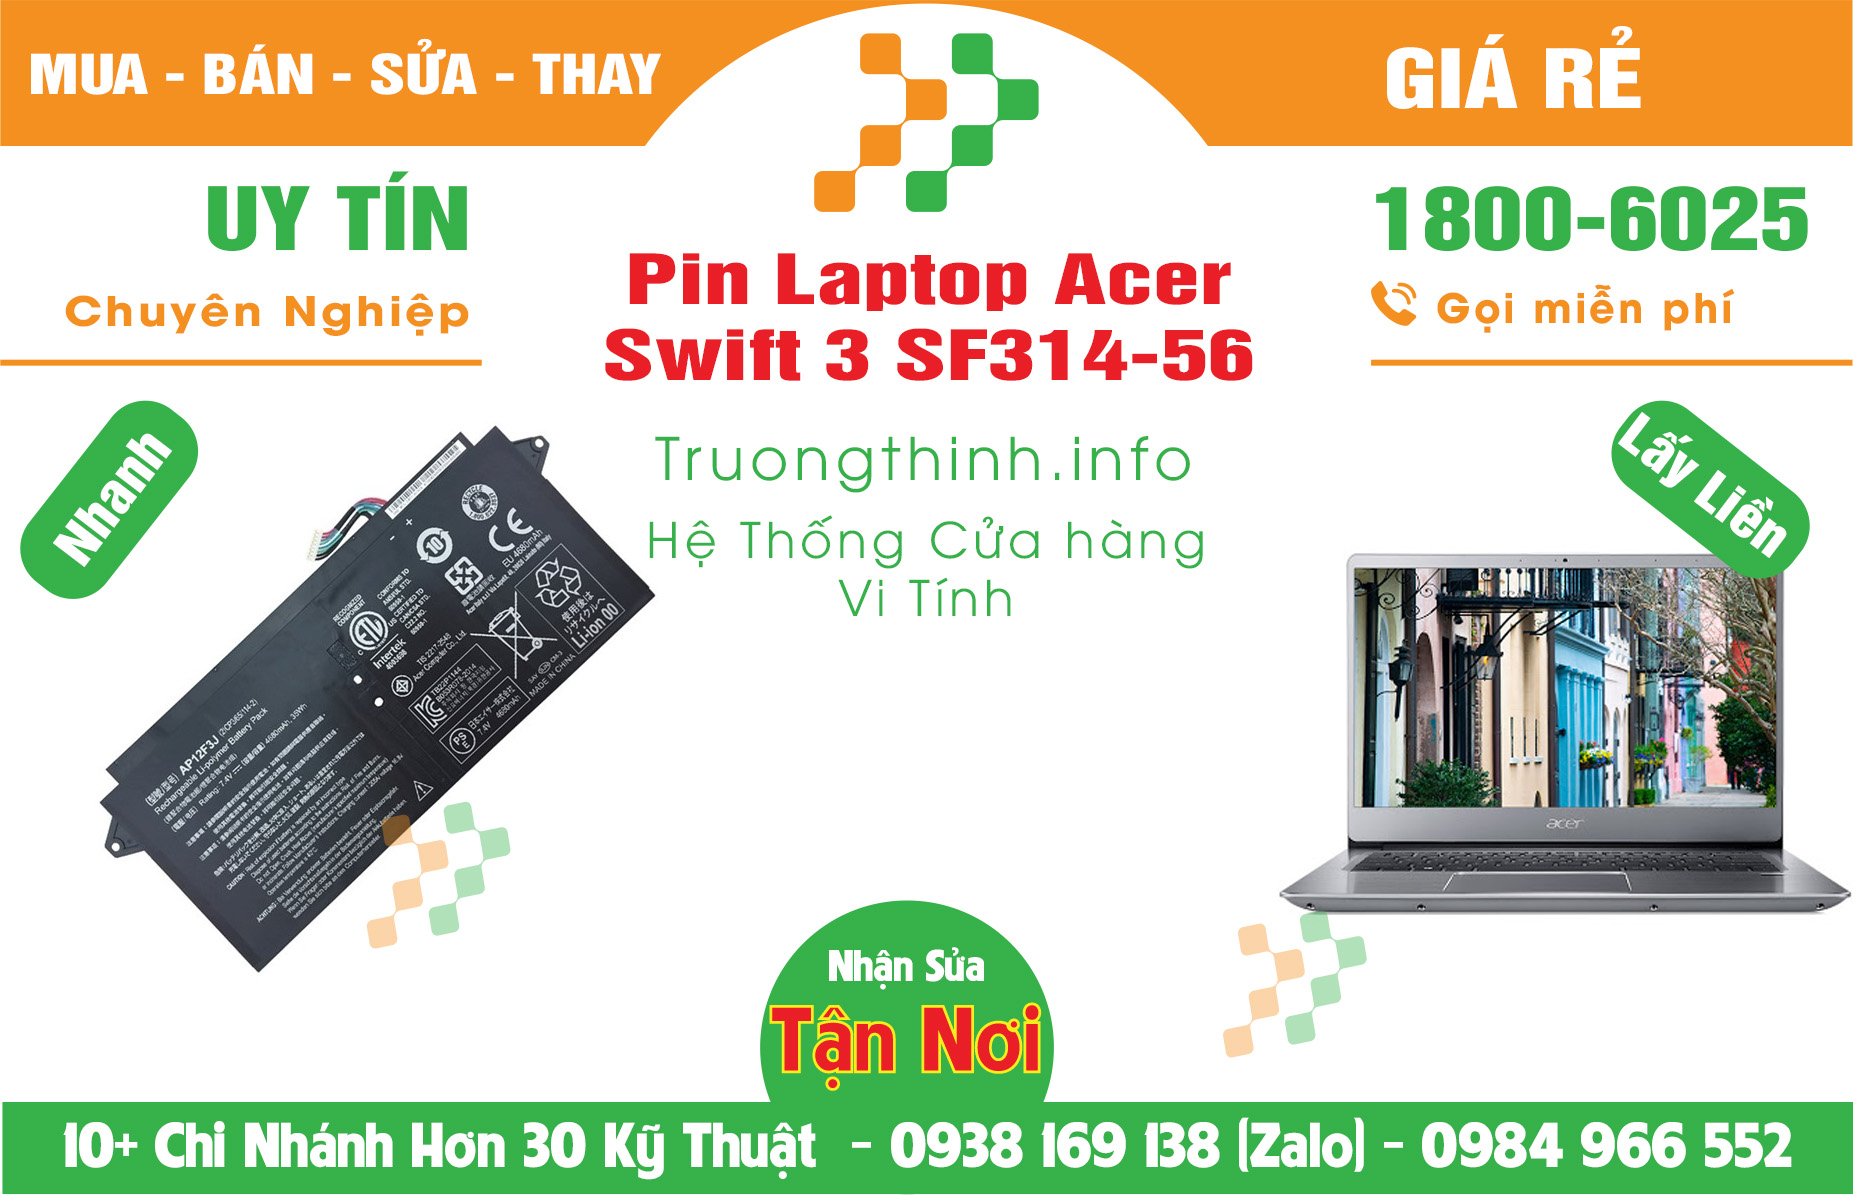 Mua Bán Pin Acer Swift 3 SF314-56 Giá Rẻ | Máy Tính Trường Thịnh Giá Rẻ